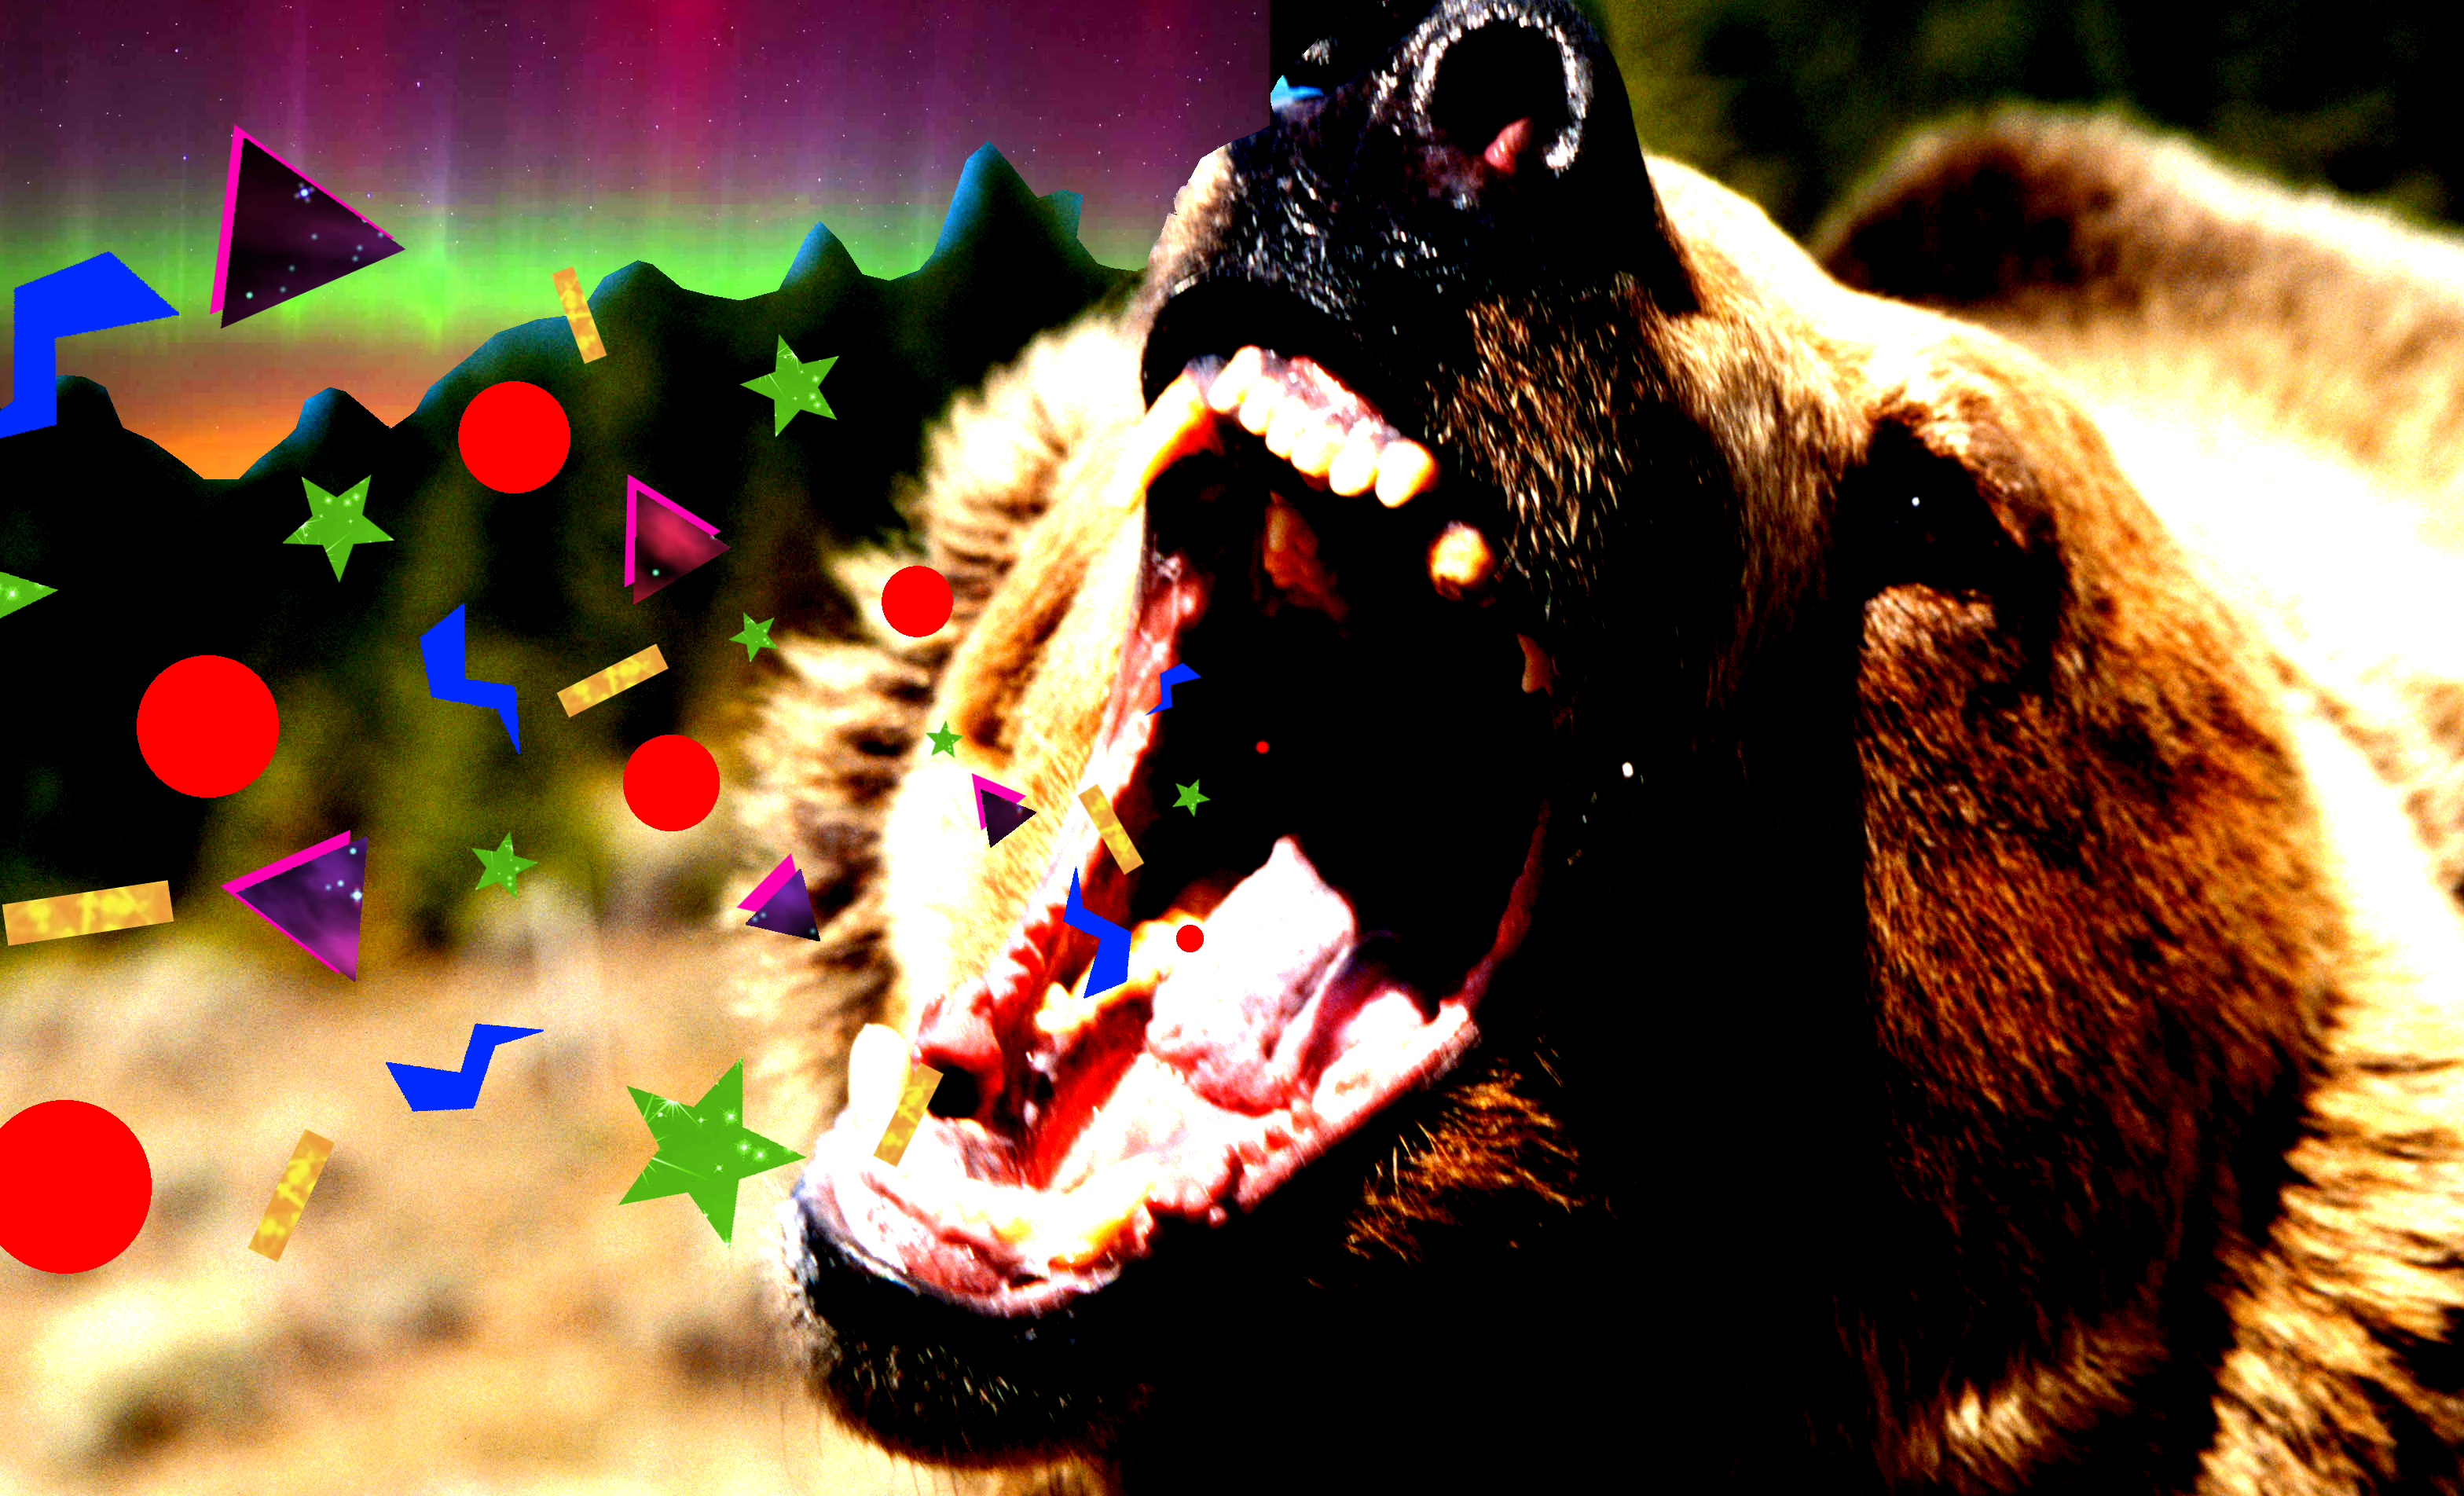 bear Attack image